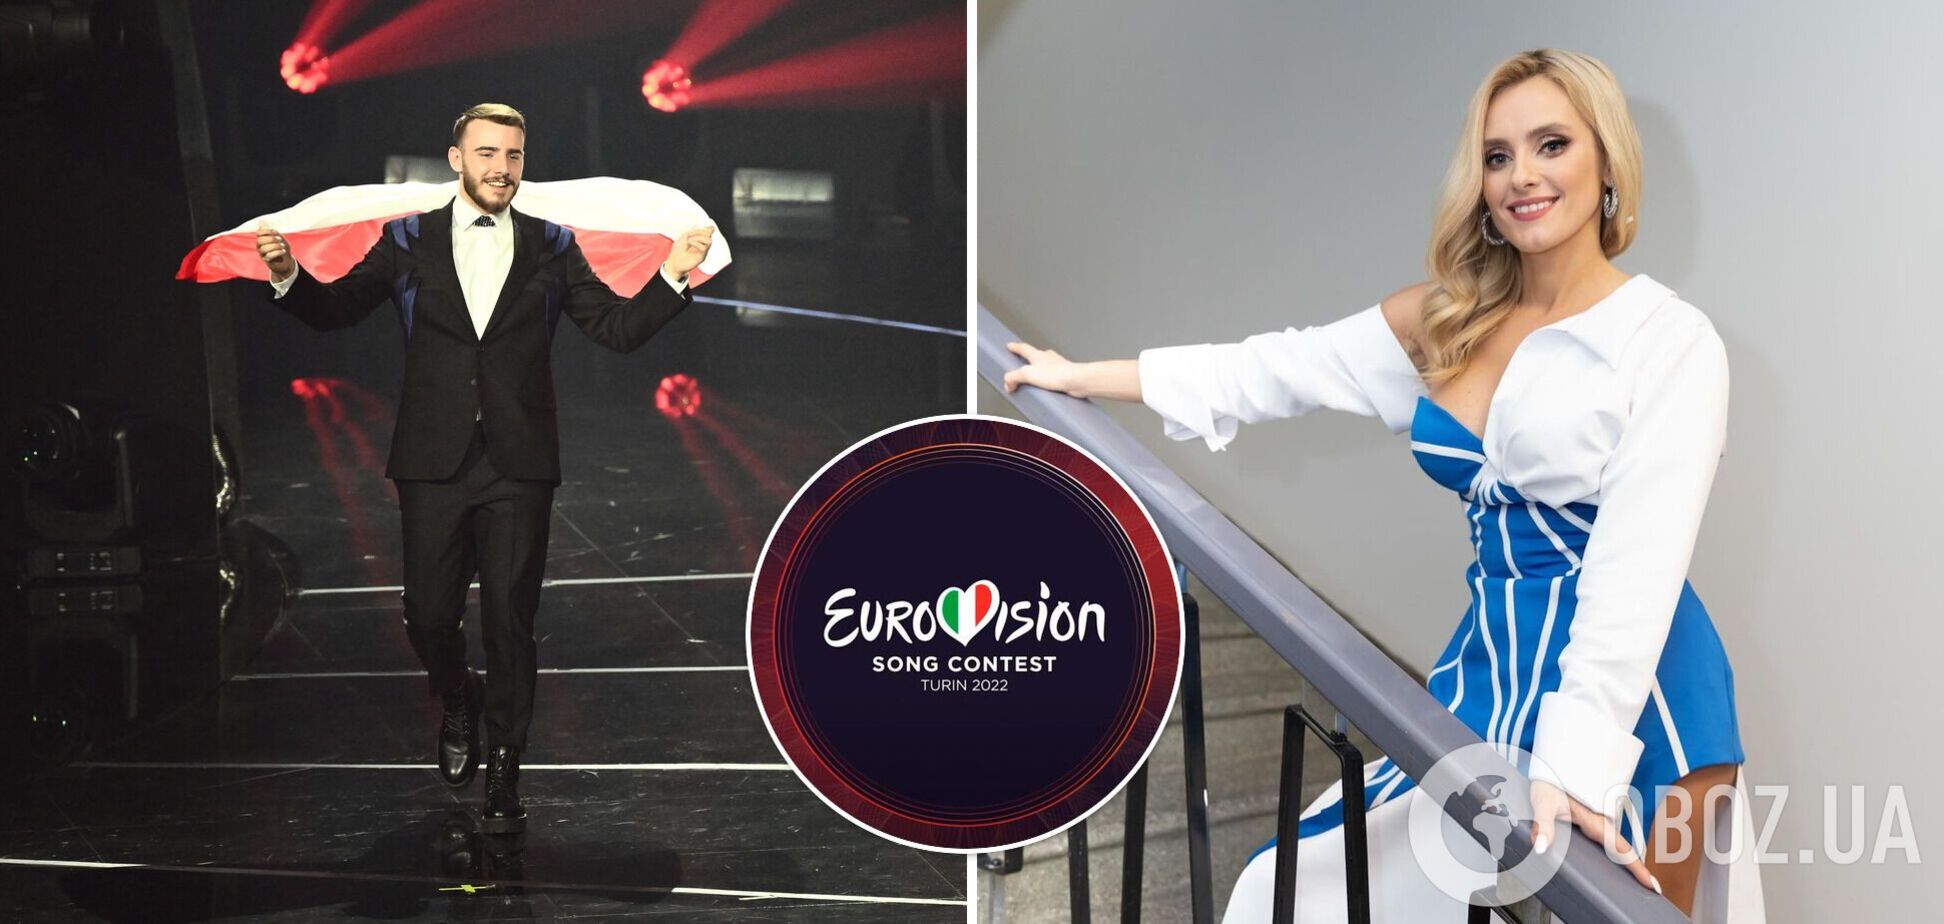 Не 10 балів, а 10 місце: як насправді Ірина Федишин оцінила Польщу на Євробаченні. Подробиці скандалу